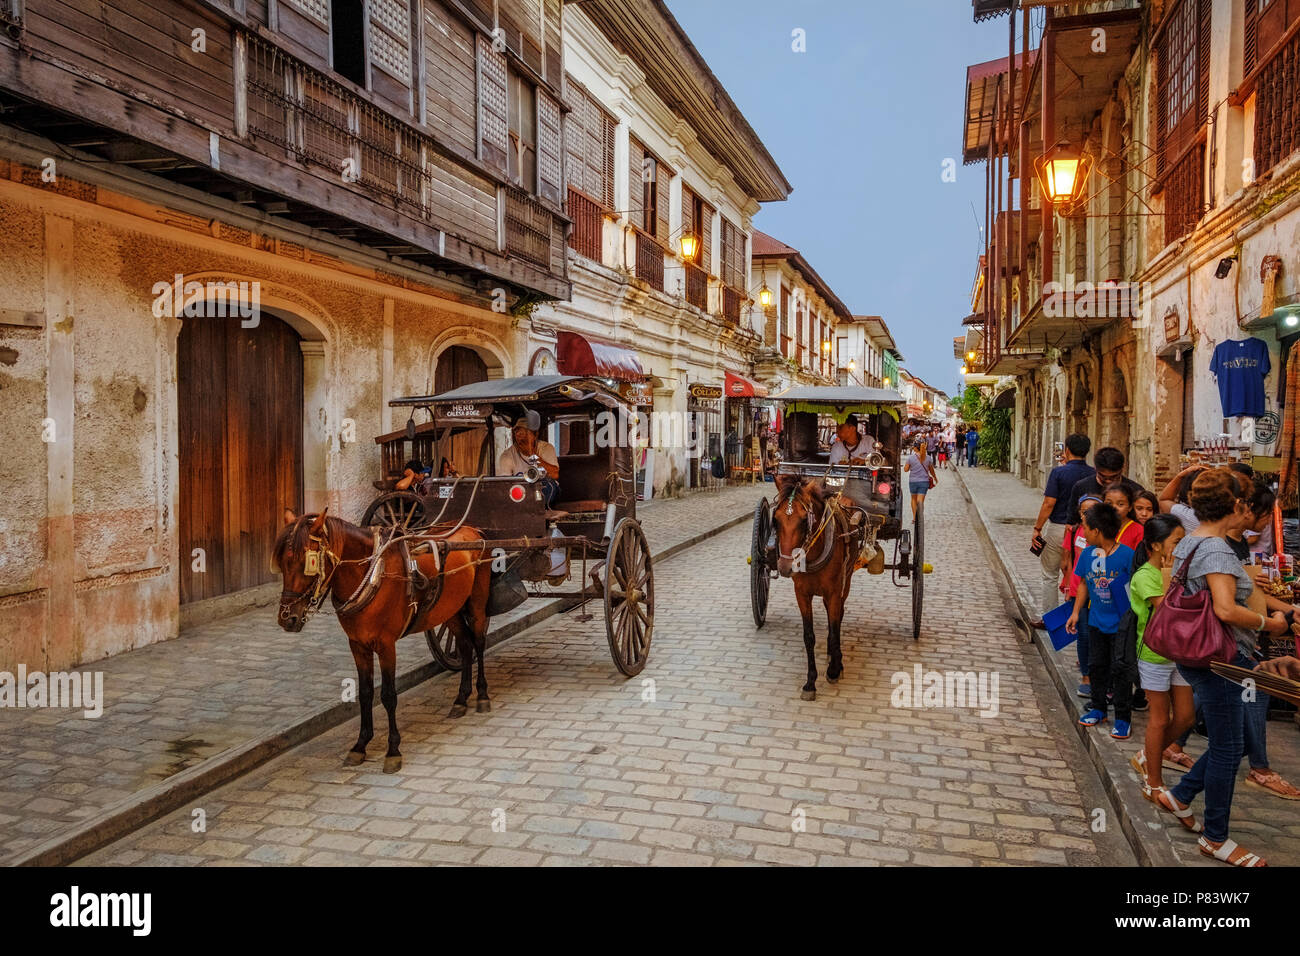 La pittoresque ville coloniale espagnole du 16ème siècle de Vigan aux Philippines avec ses calèches et rues pavées Banque D'Images